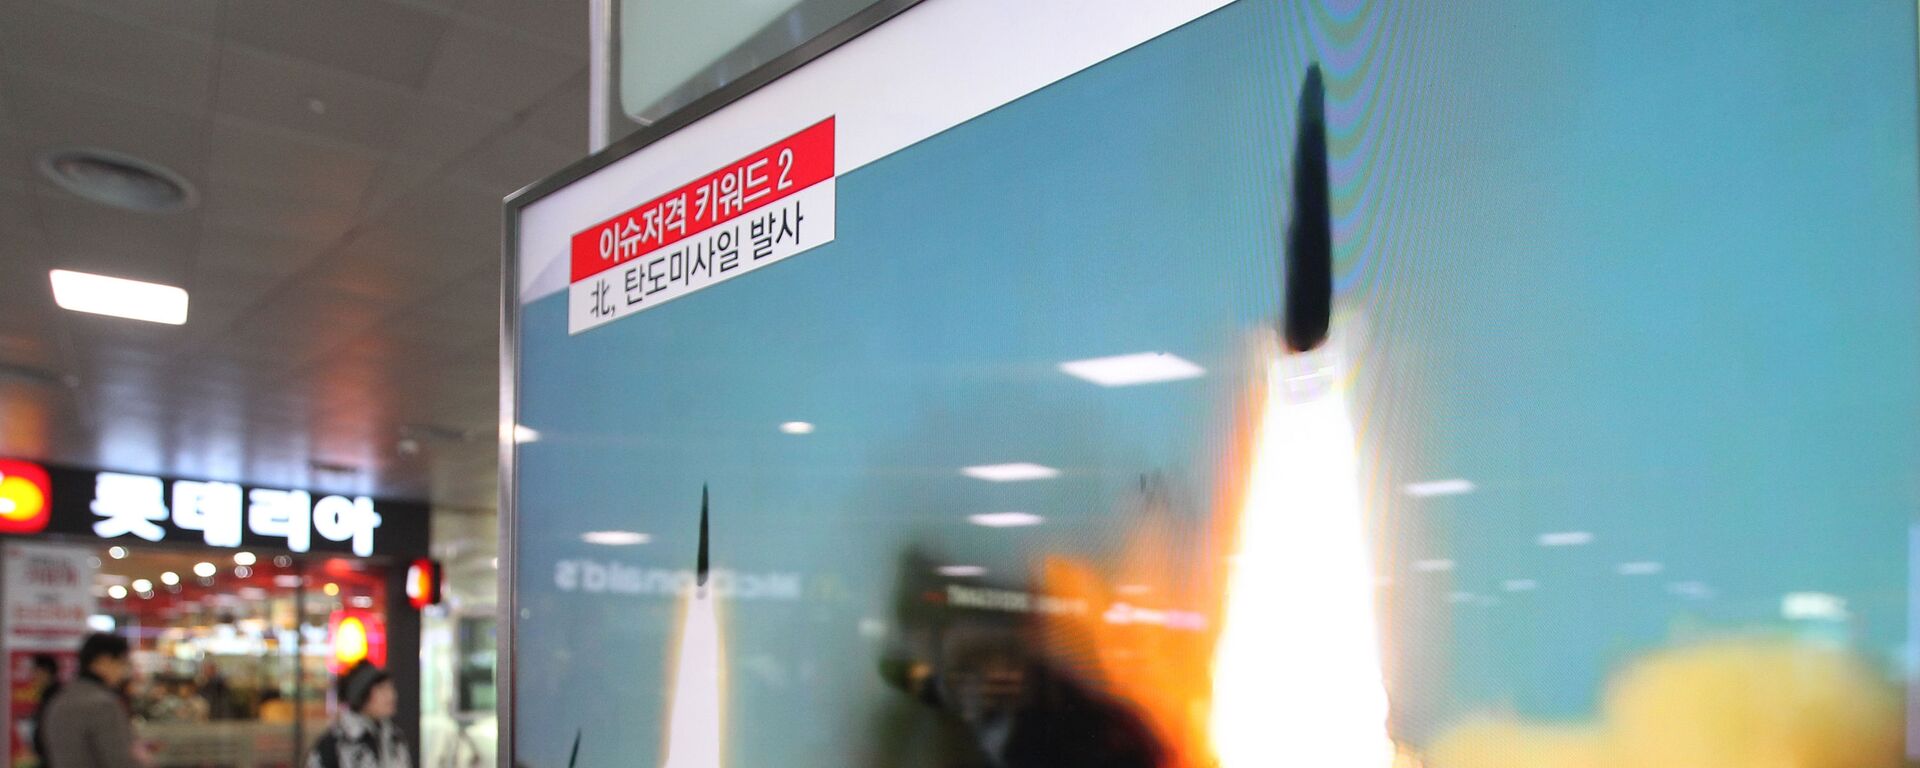 Јужнокорејски медији извештавају о лансирању ракета Северне Кореје - Sputnik Србија, 1920, 07.06.2022